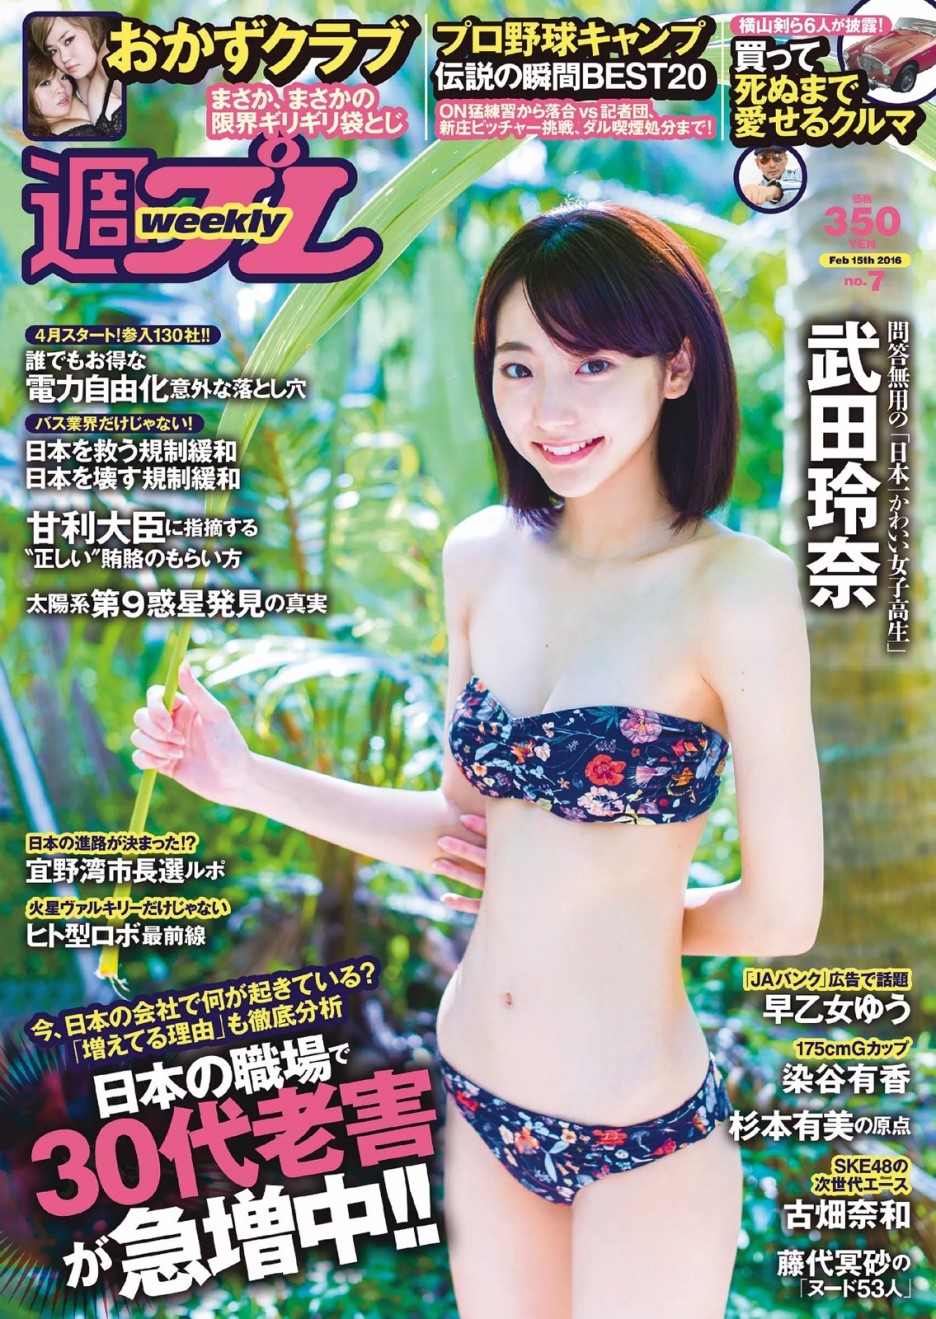 Порно журналы японии фото 76